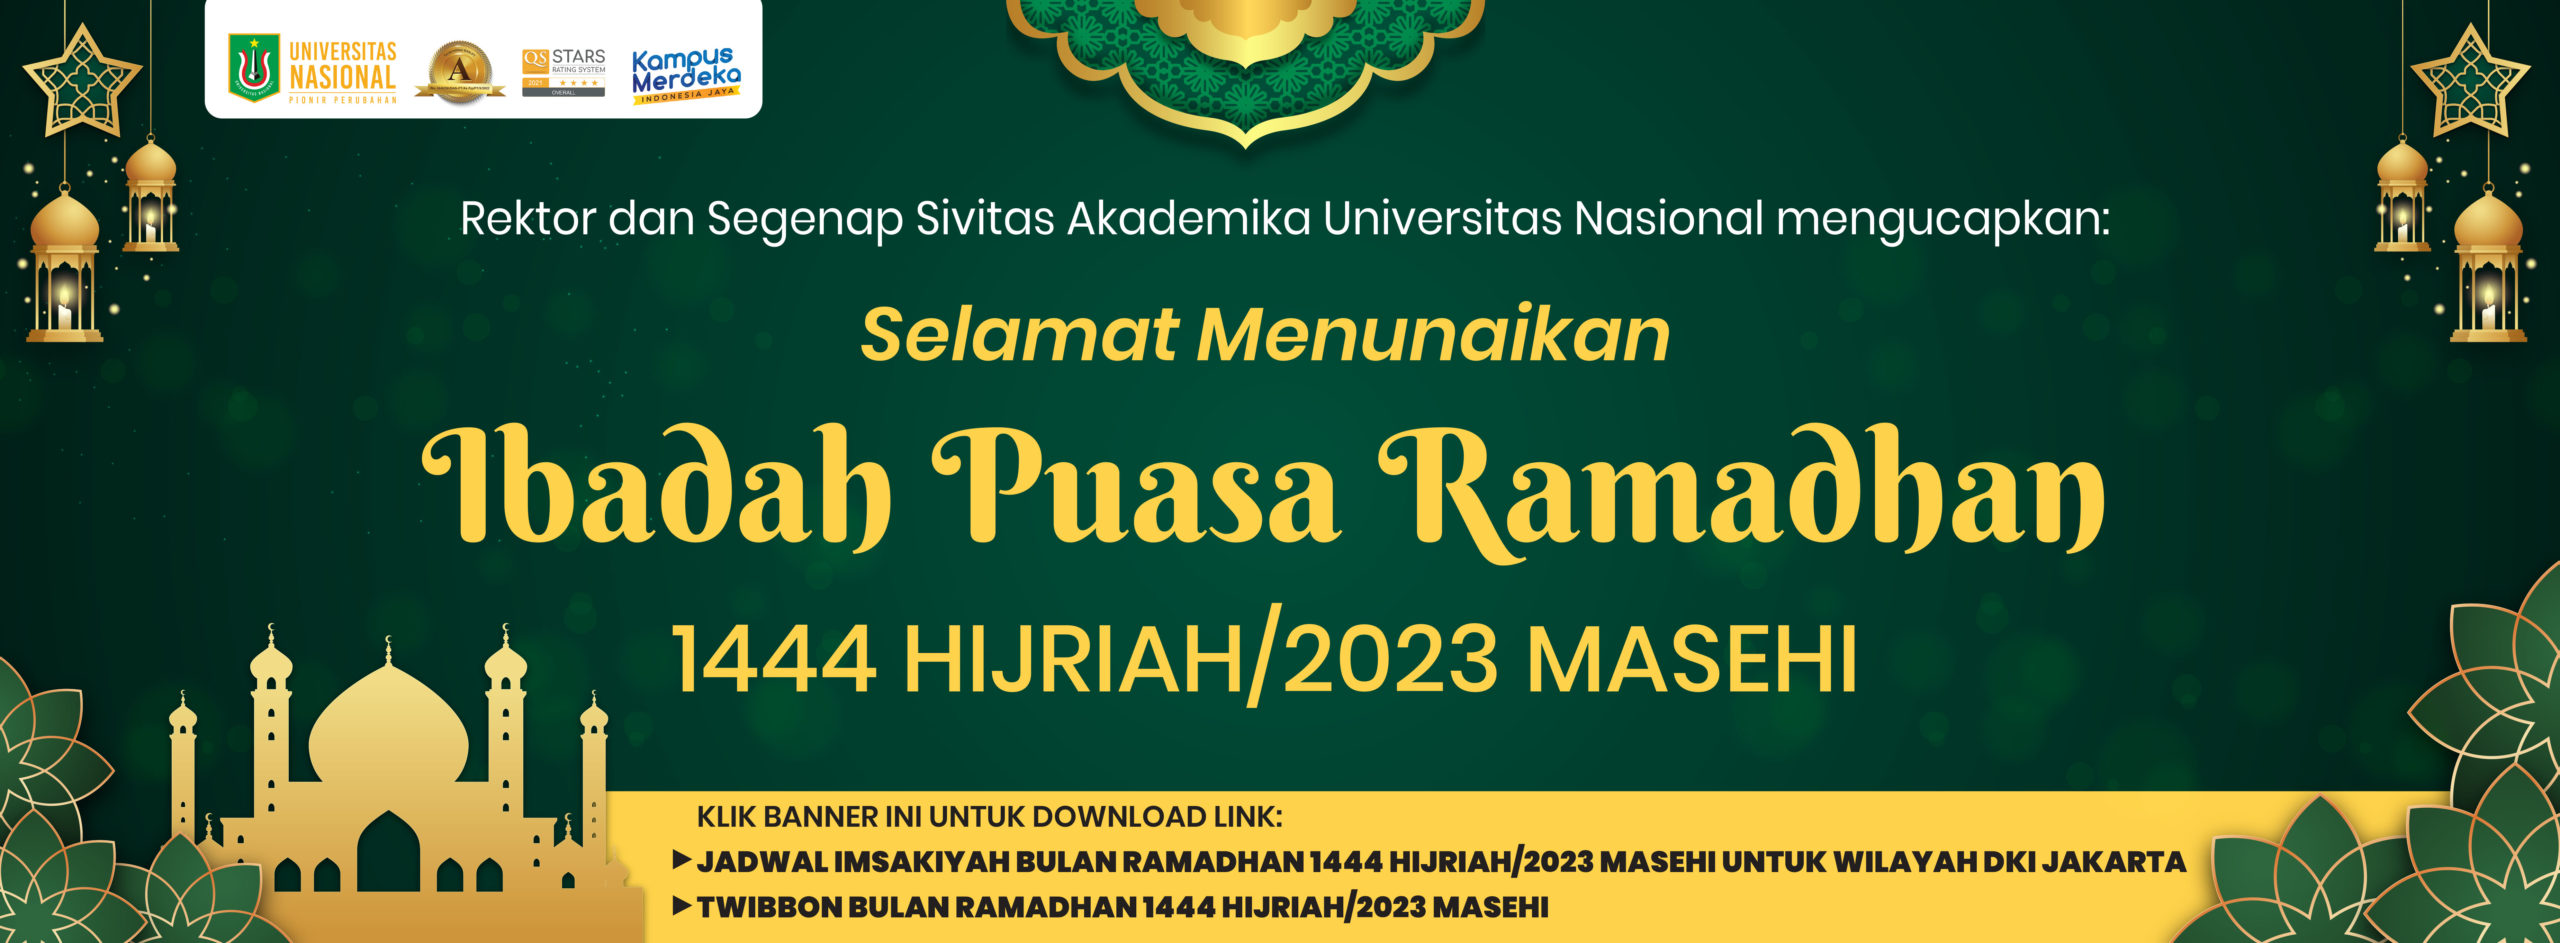 Rektor dan Segenap Sivitas Akademika Universitas Nasional mengucapkan: Selamat Menunaikan Ibadah Puasa Ramadhan 1444 Hiriah / 2023 Masehi